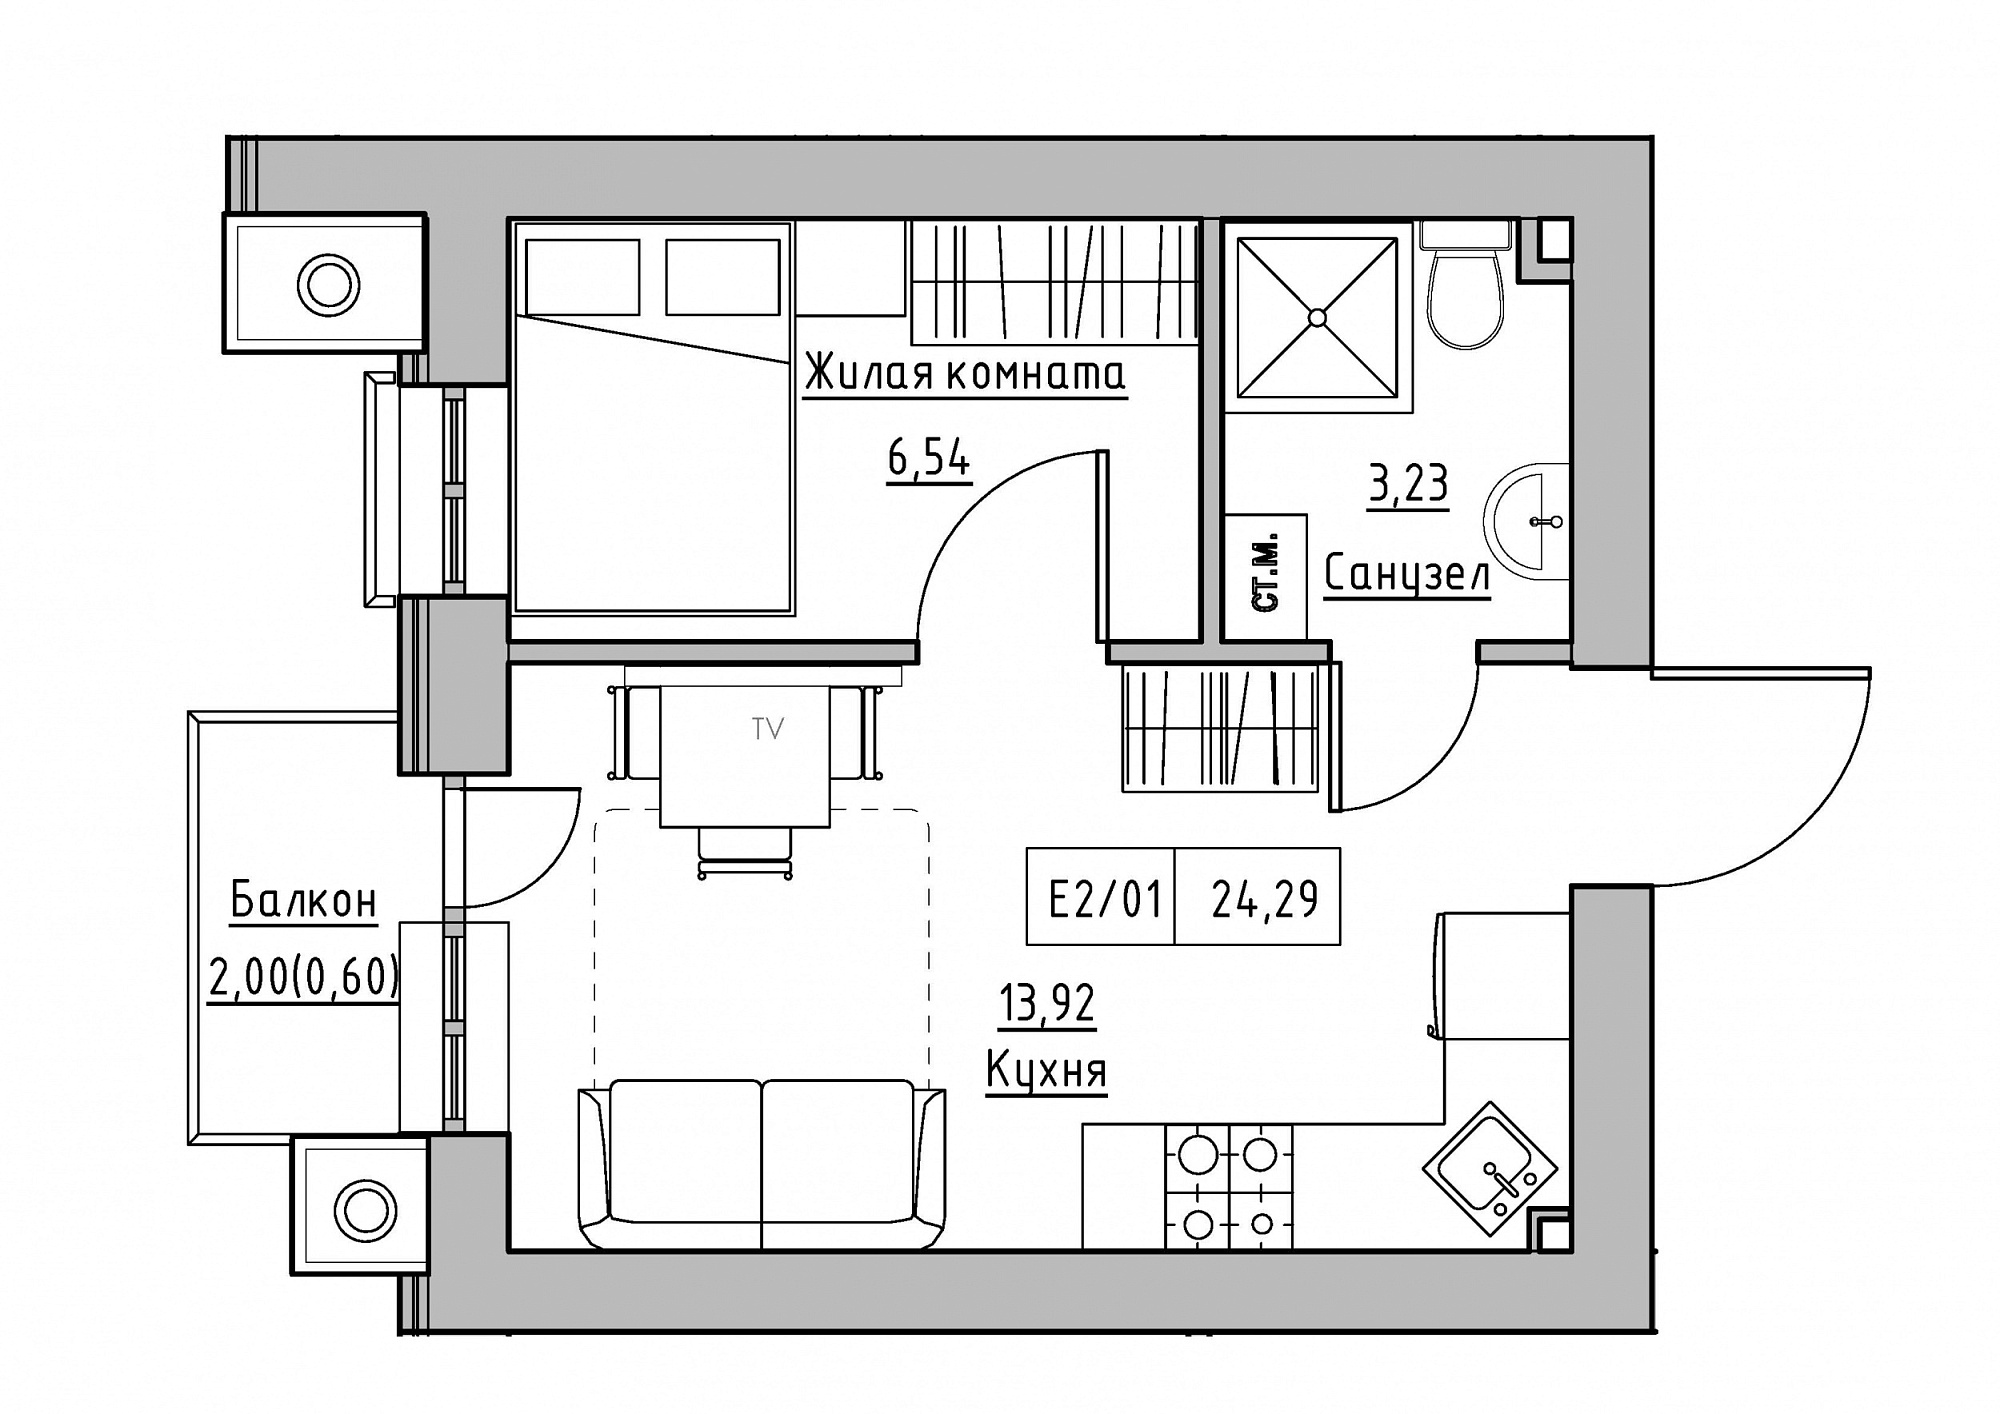 Планировка 1-к квартира площей 24.29м2, KS-012-04/0009.